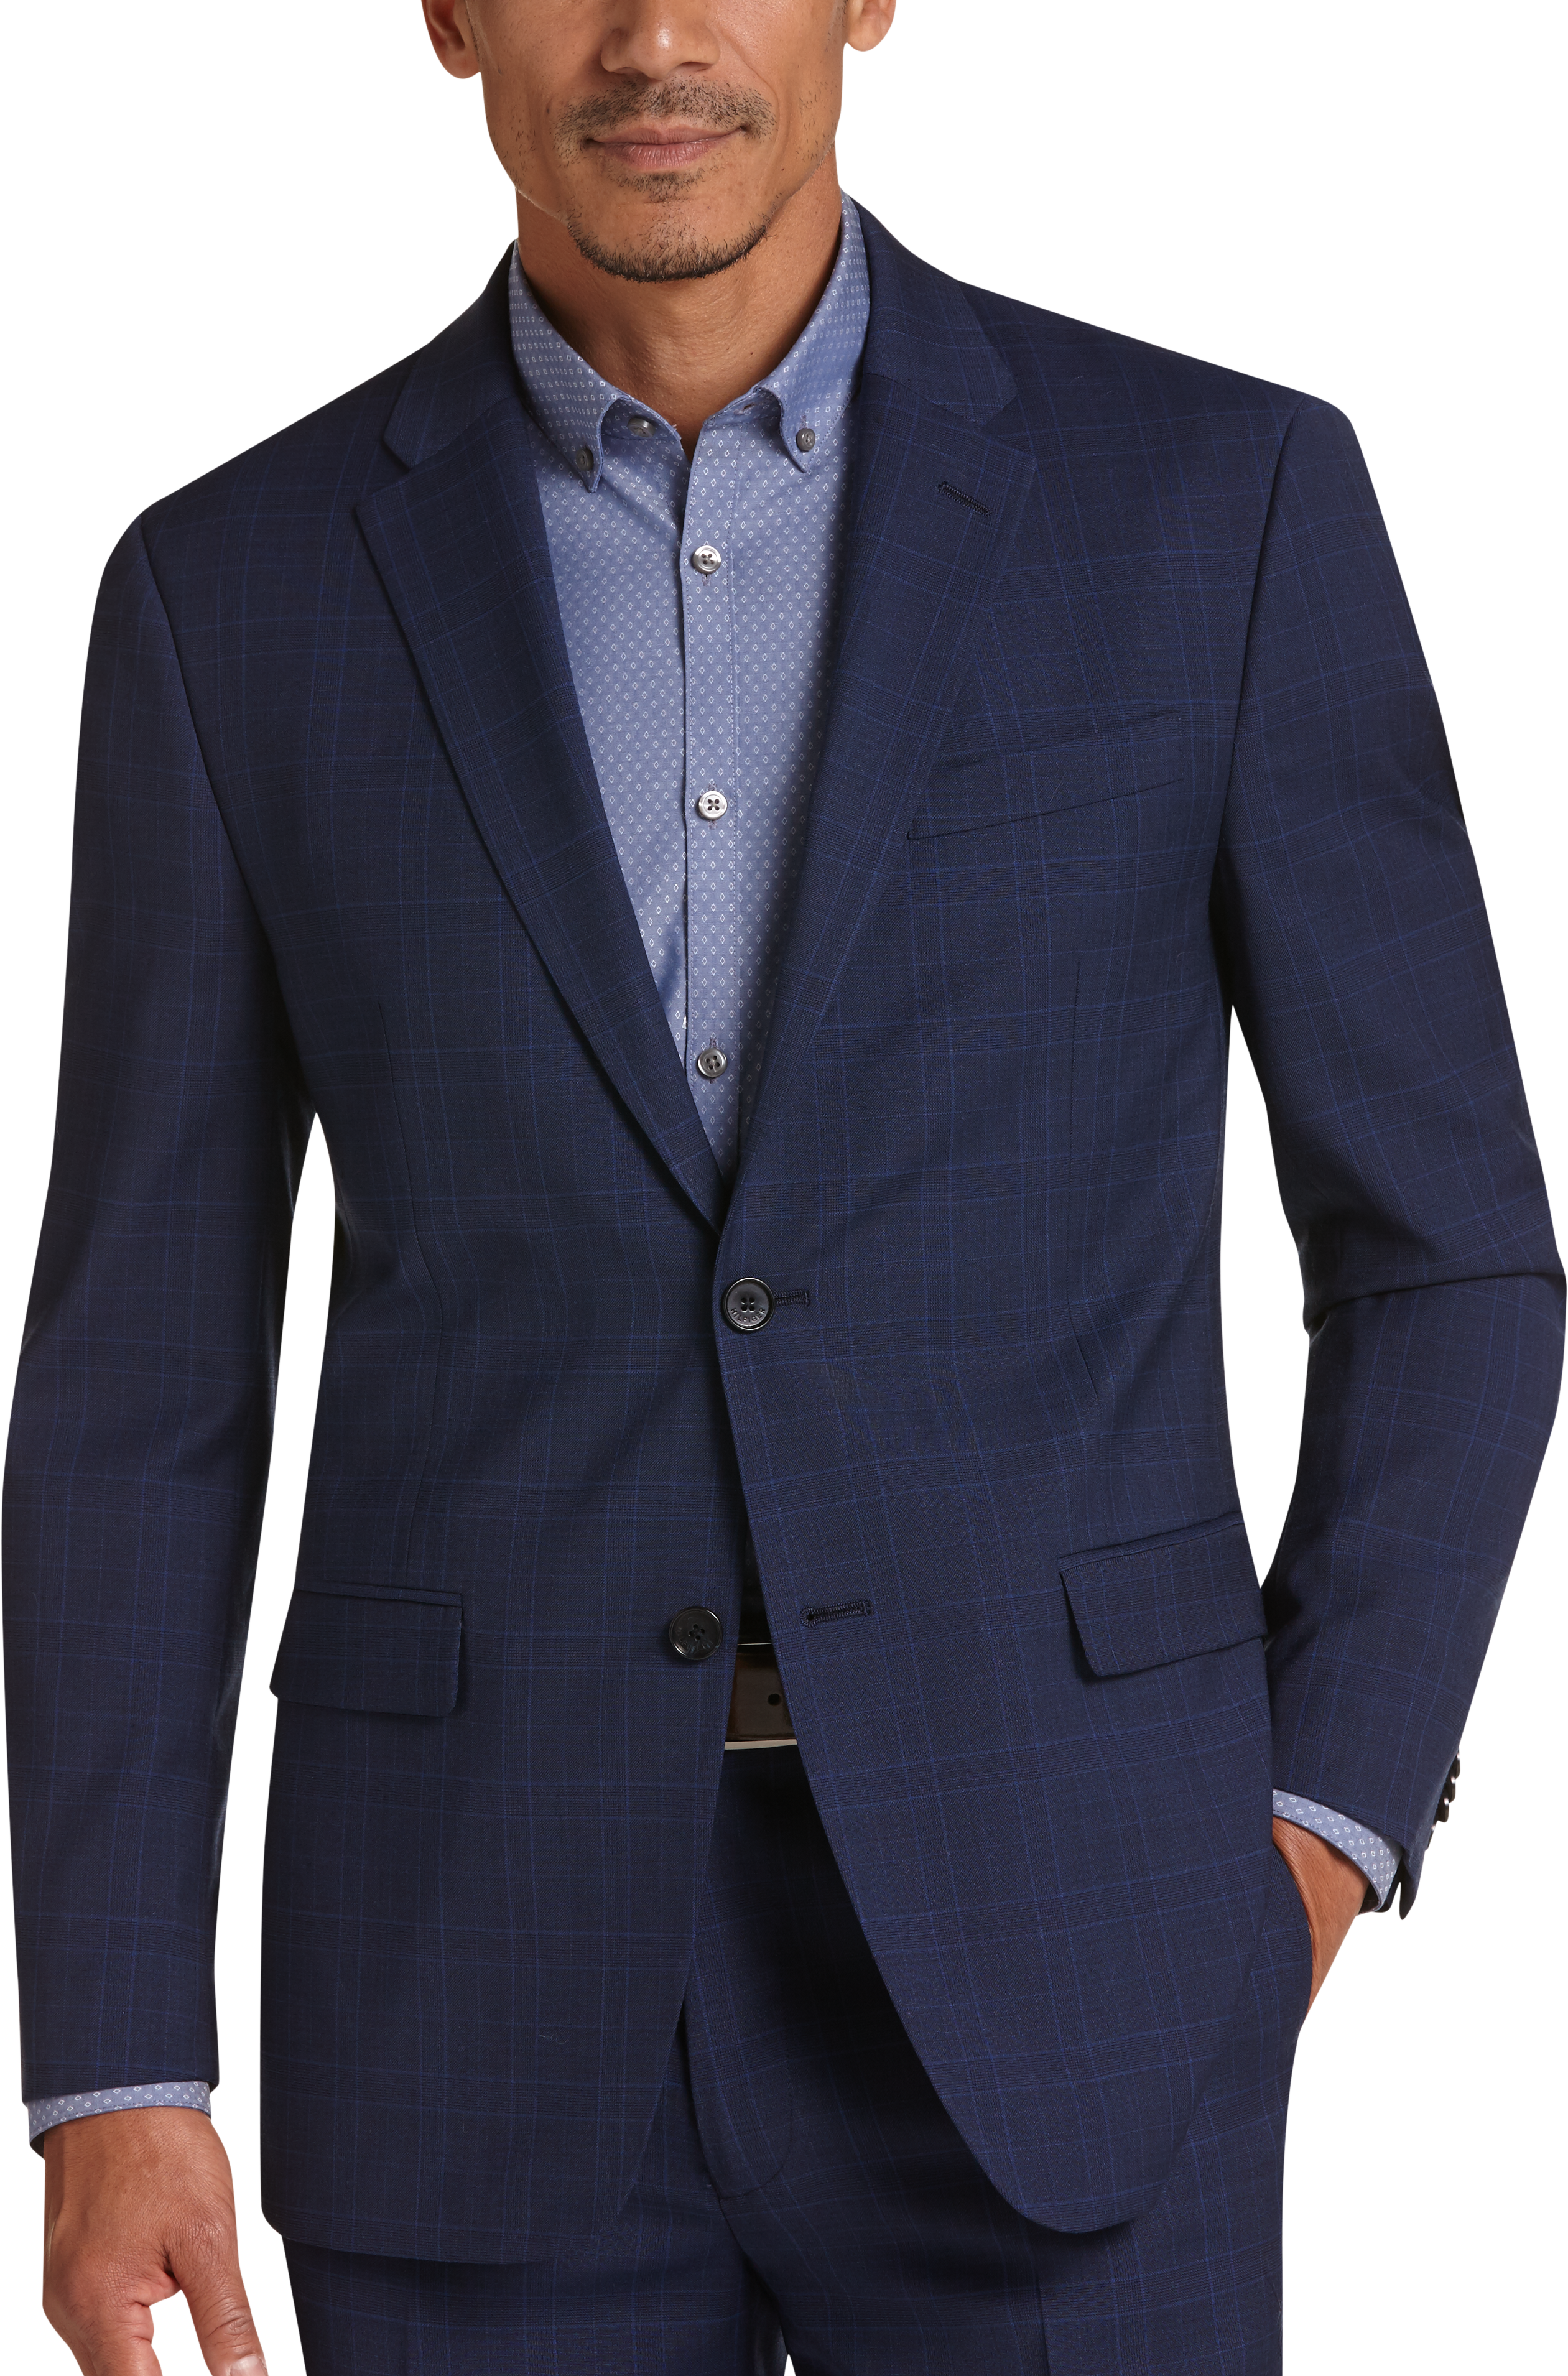 Tommy Hilfiger Blue Plaid Slim Fit Suit - Men's Sale | Men's Wearhouse